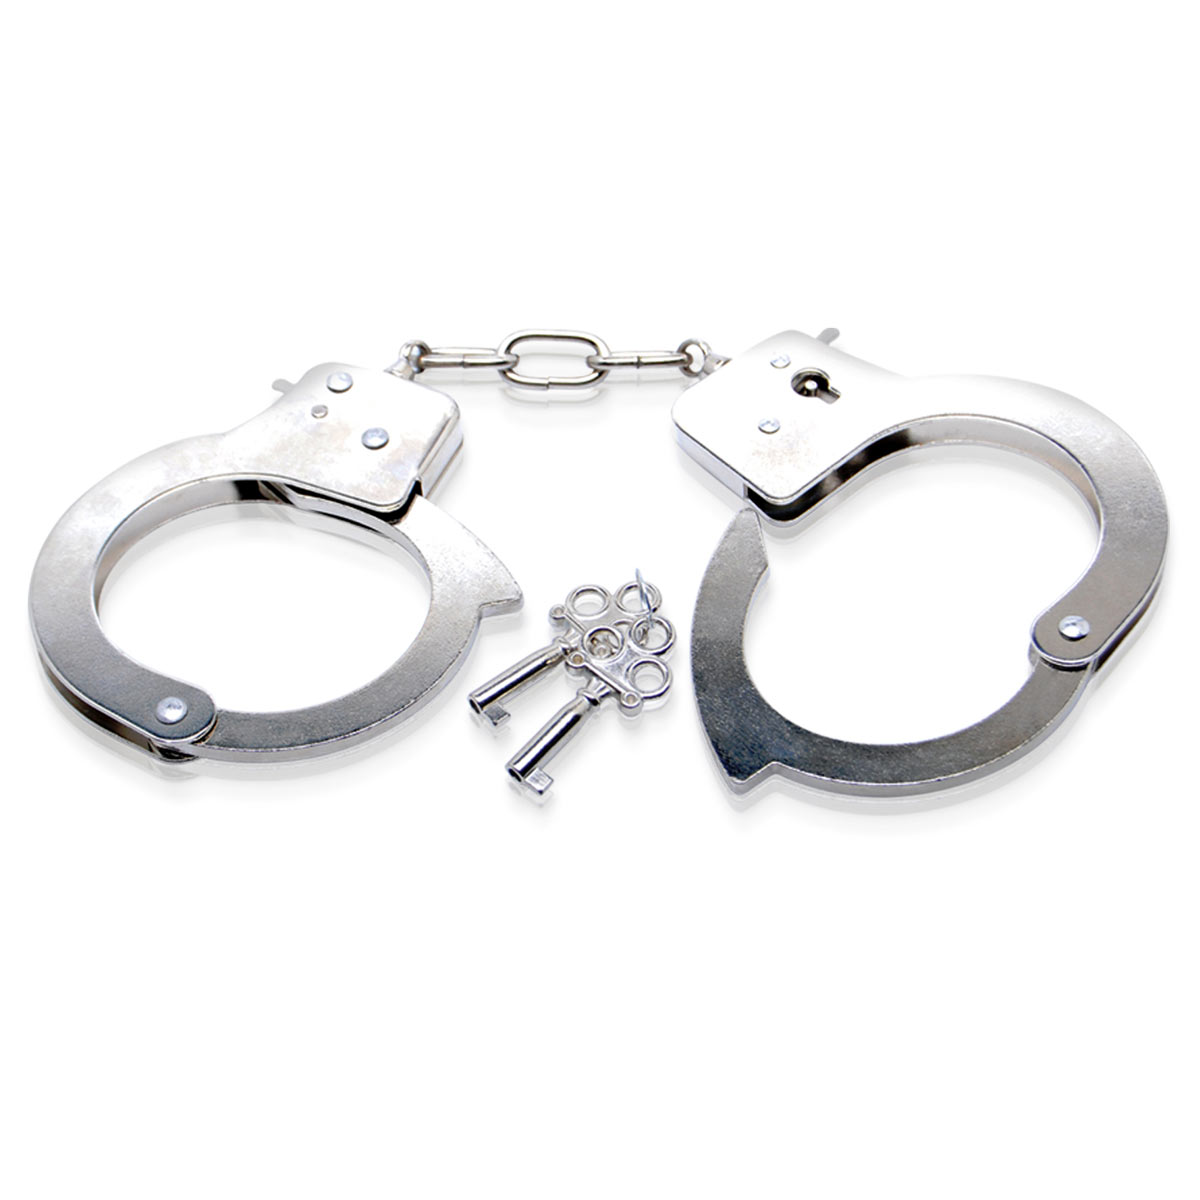 Купить Металлические наручники Metal Handcuffs с ключиками в Москве.